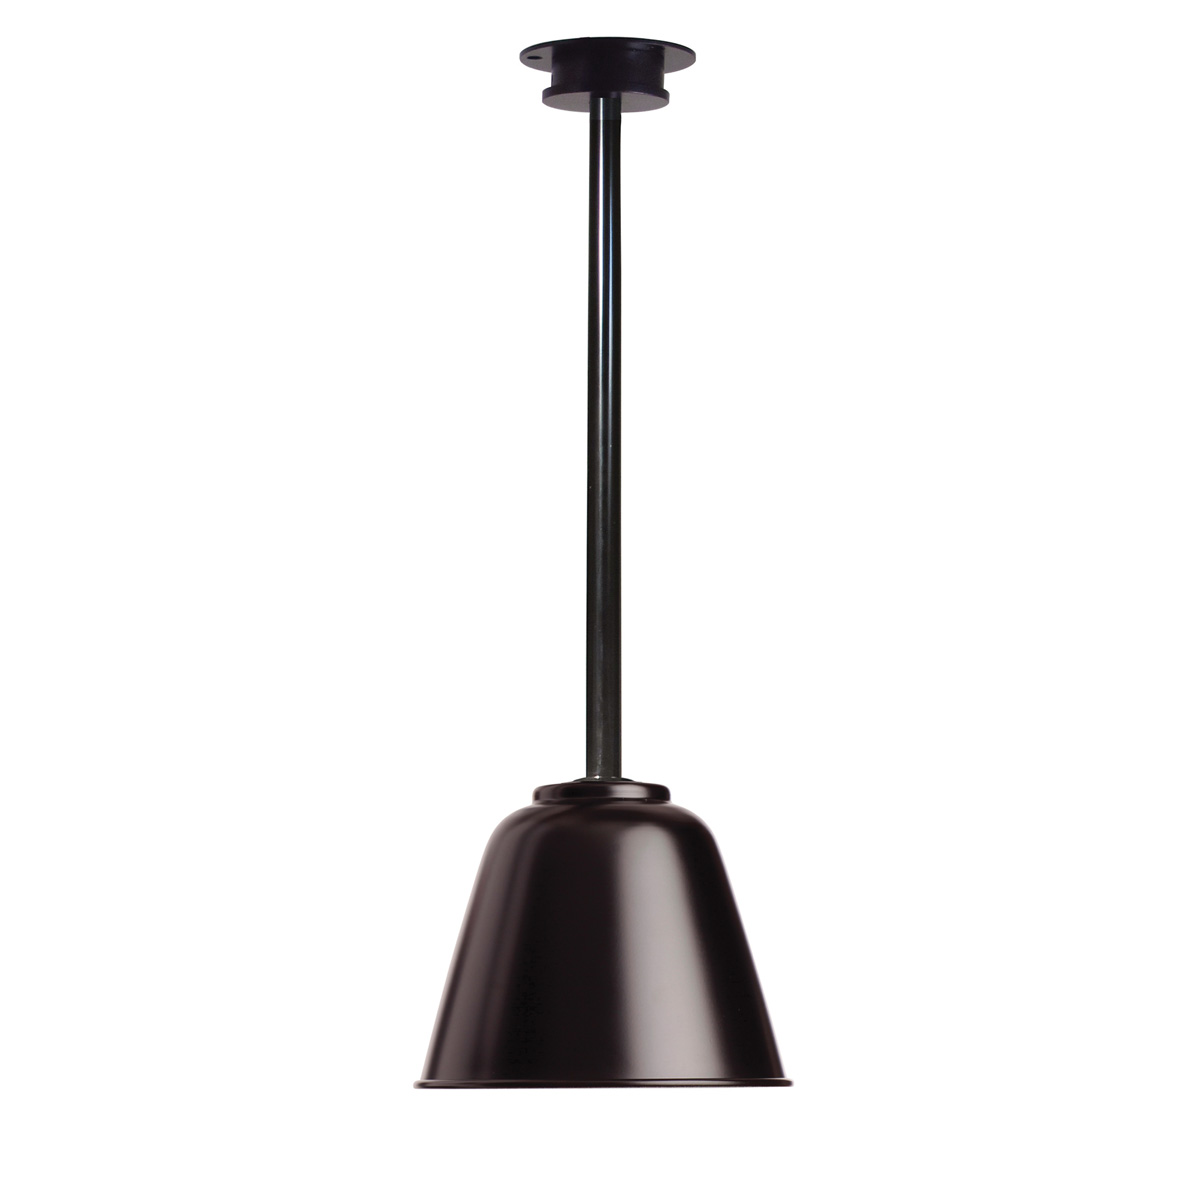 Kleine skandinavische Stab-Deckenlampe TUBY BELL: Kleine skandinavische Deckenlampe aus Aluminium Tuby Bell in schwarz